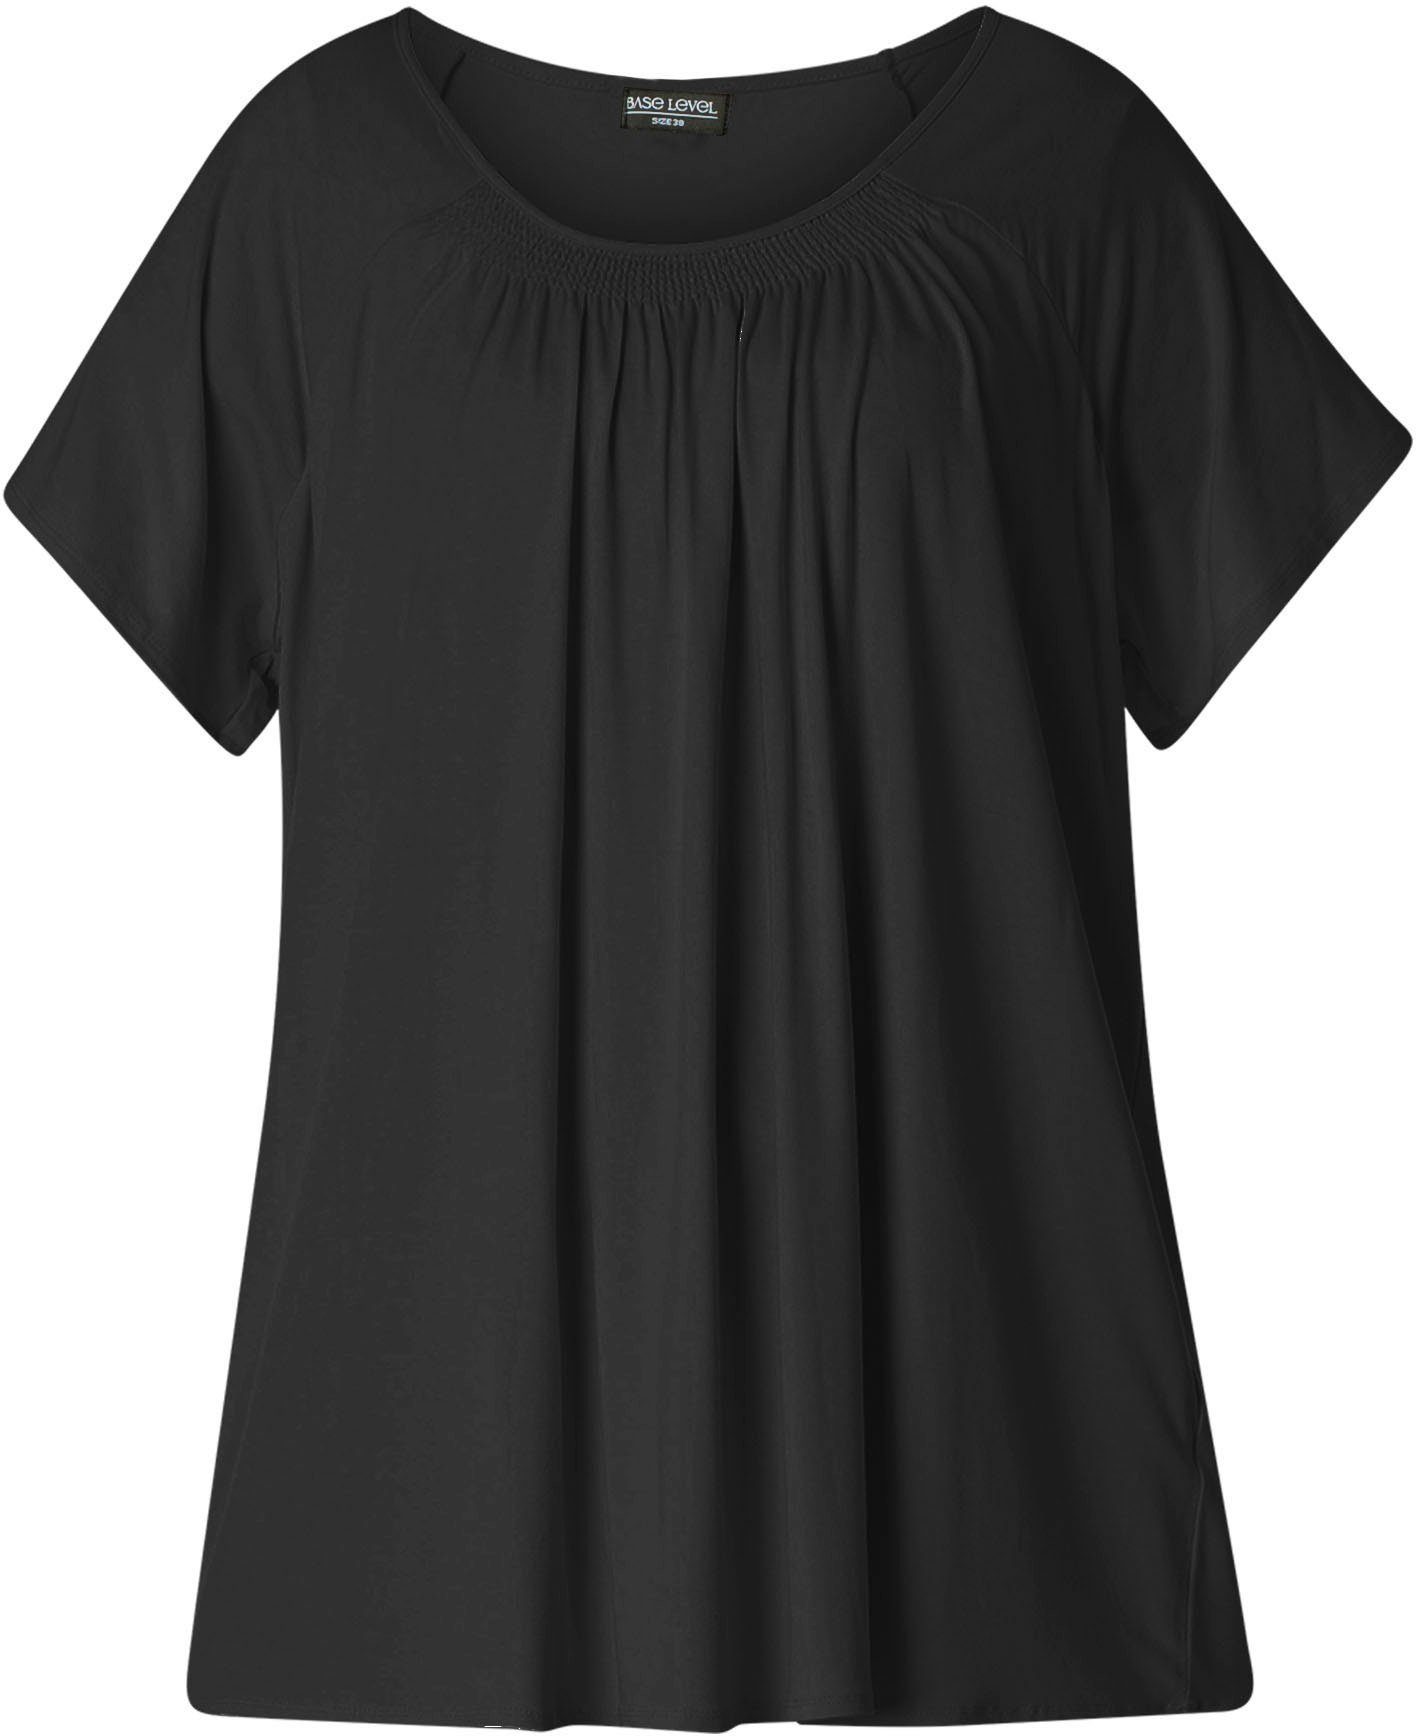 Base Level Curvy T-Shirt black Baumwoll-Mischqualität In formstabiler Yokia